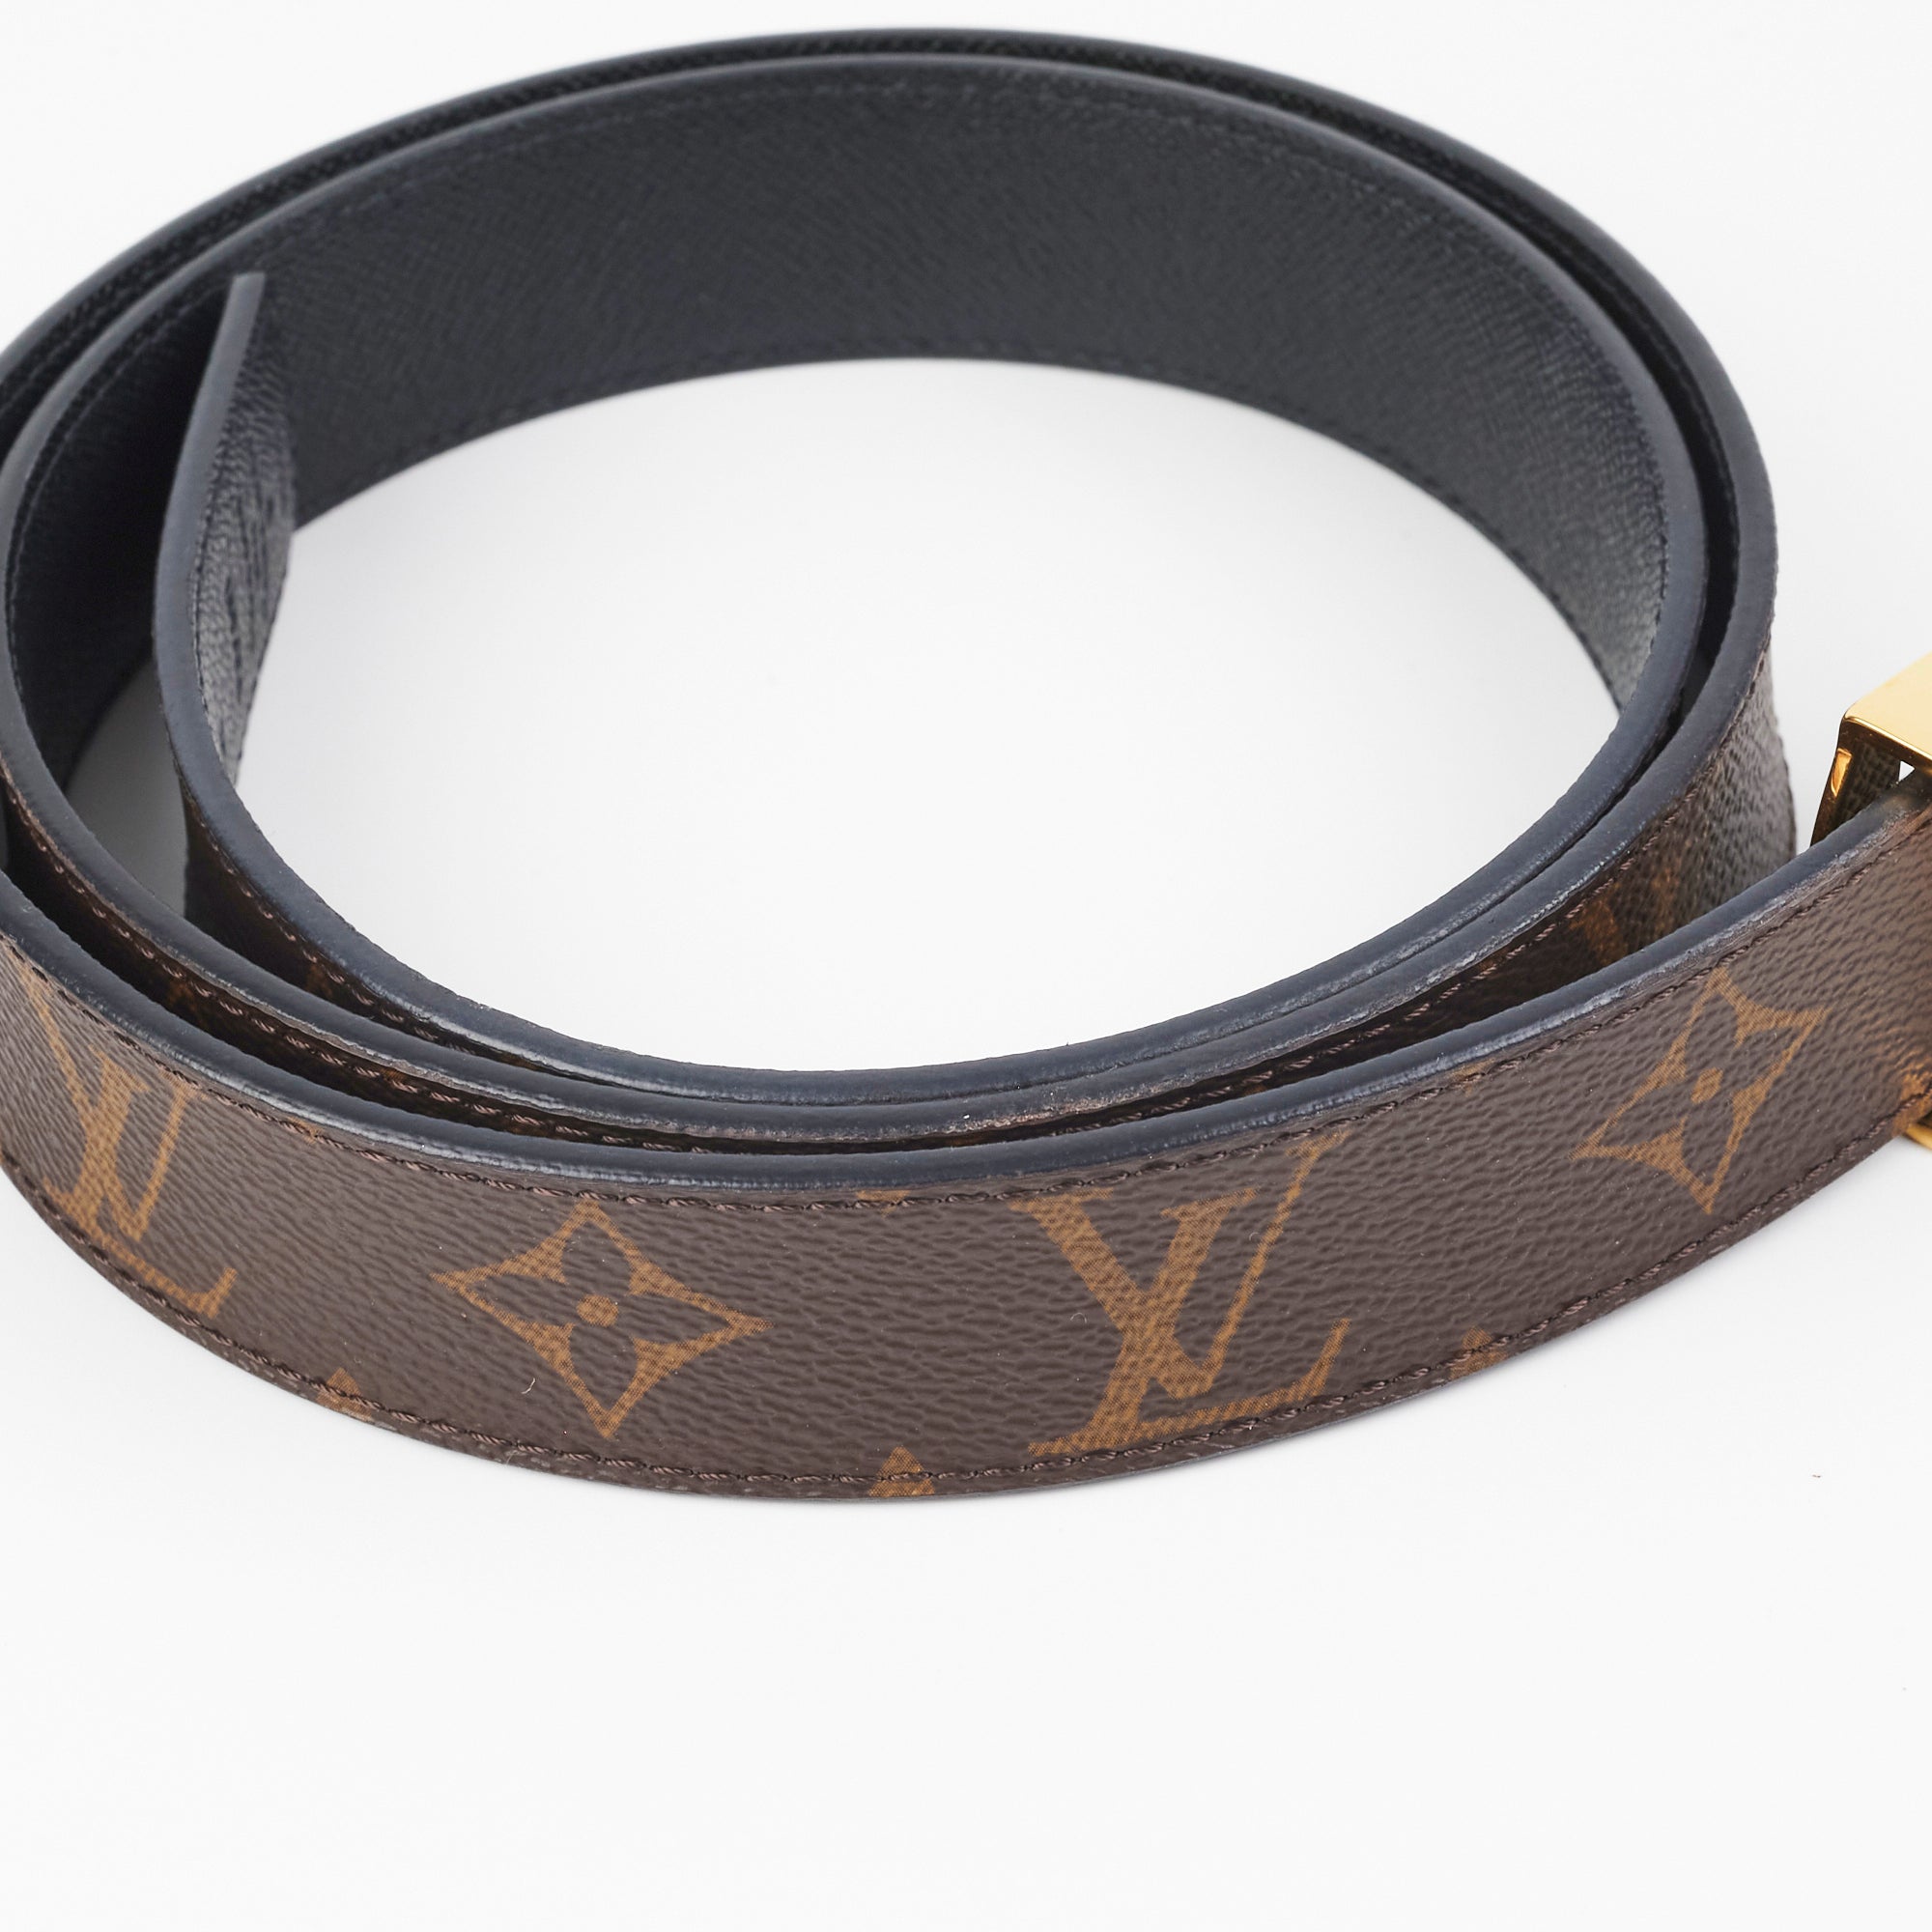 John Pye Auctions - Louis Vuitton Reversible LV Leather Belt, Size 95/38,  with Dust Bag